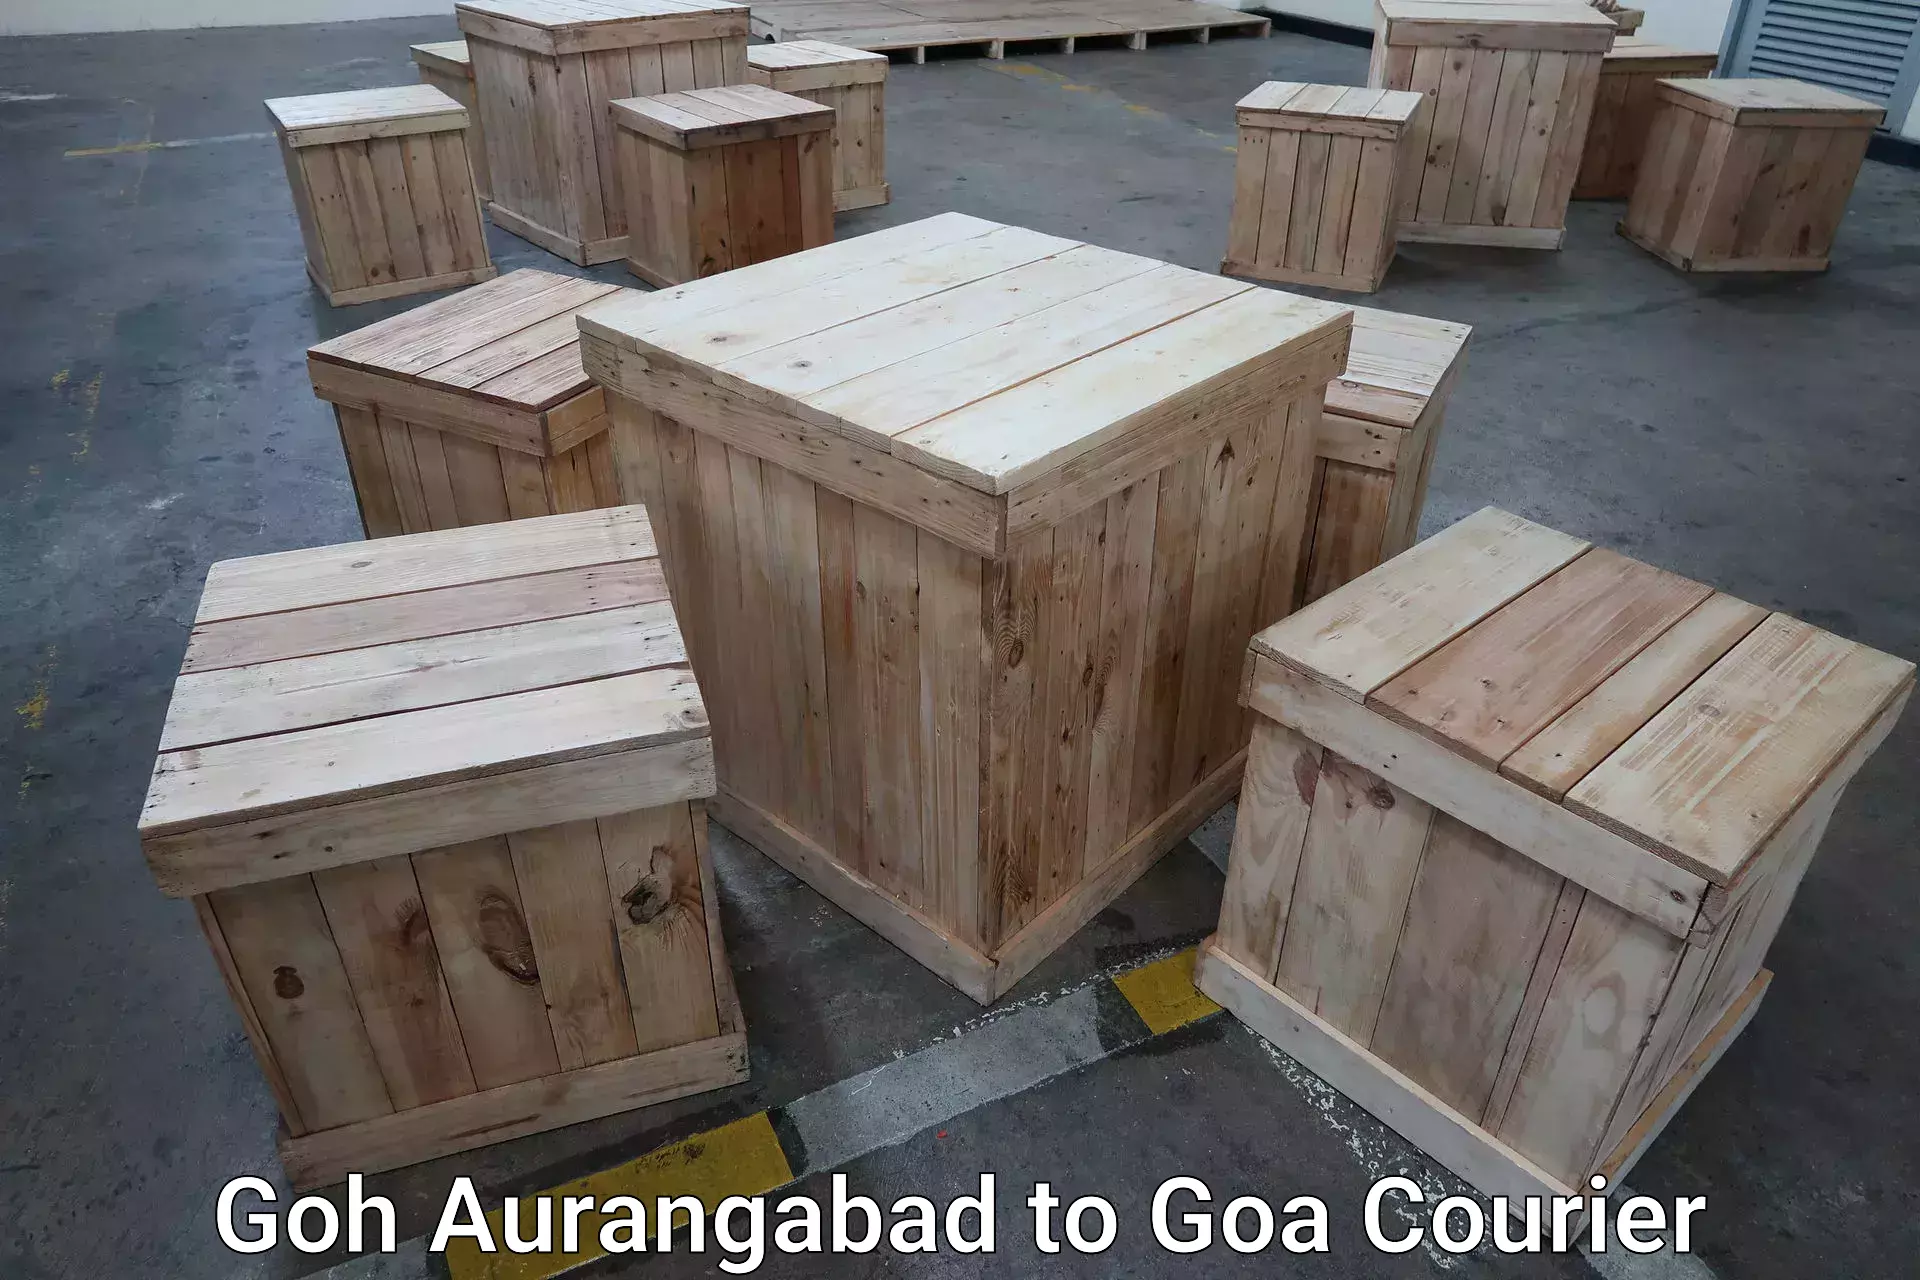 Luggage shipping service Goh Aurangabad to Ponda